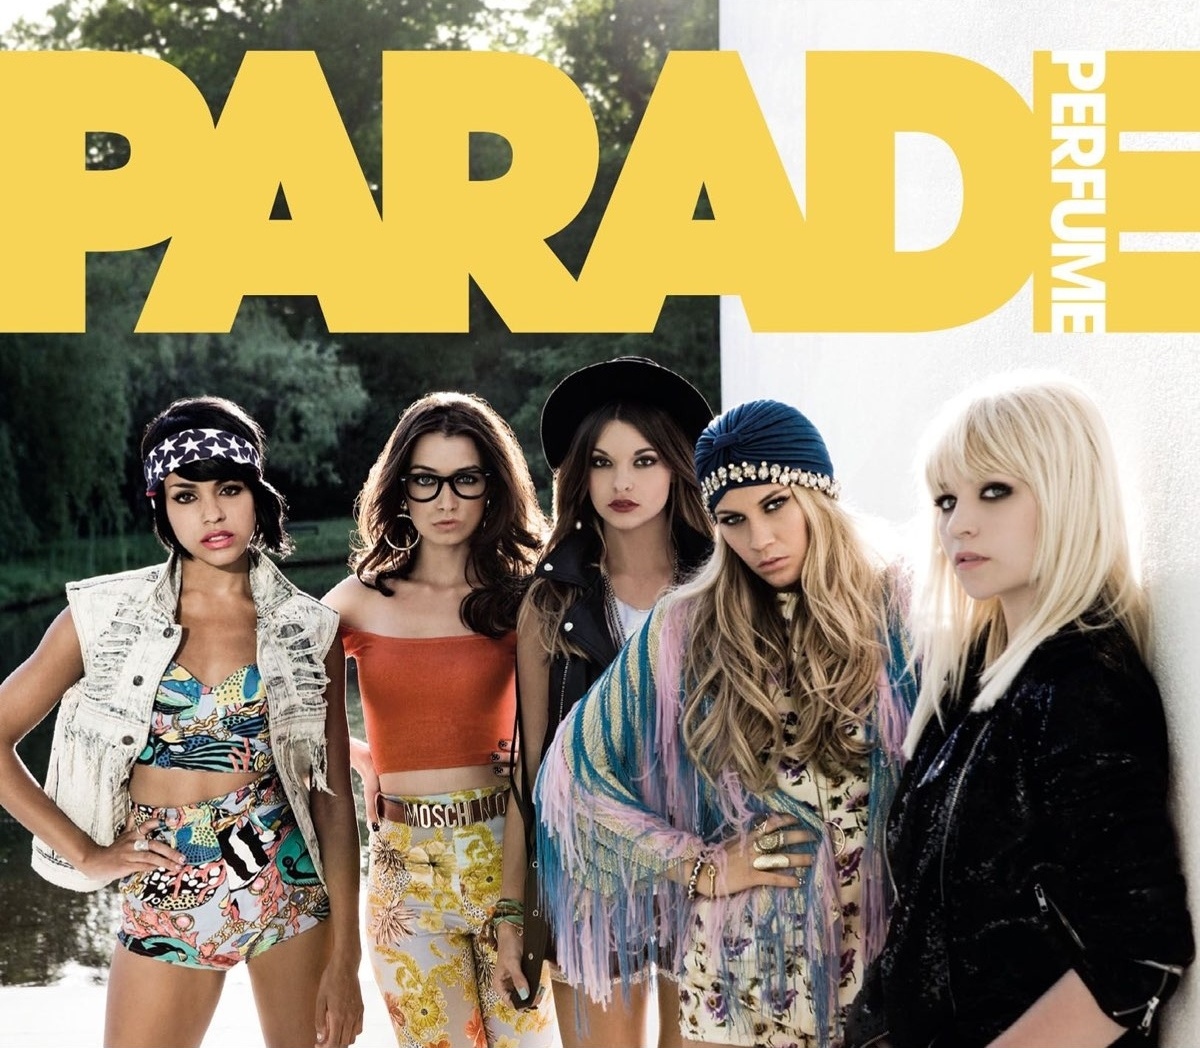 Parade — Perfume cover artwork